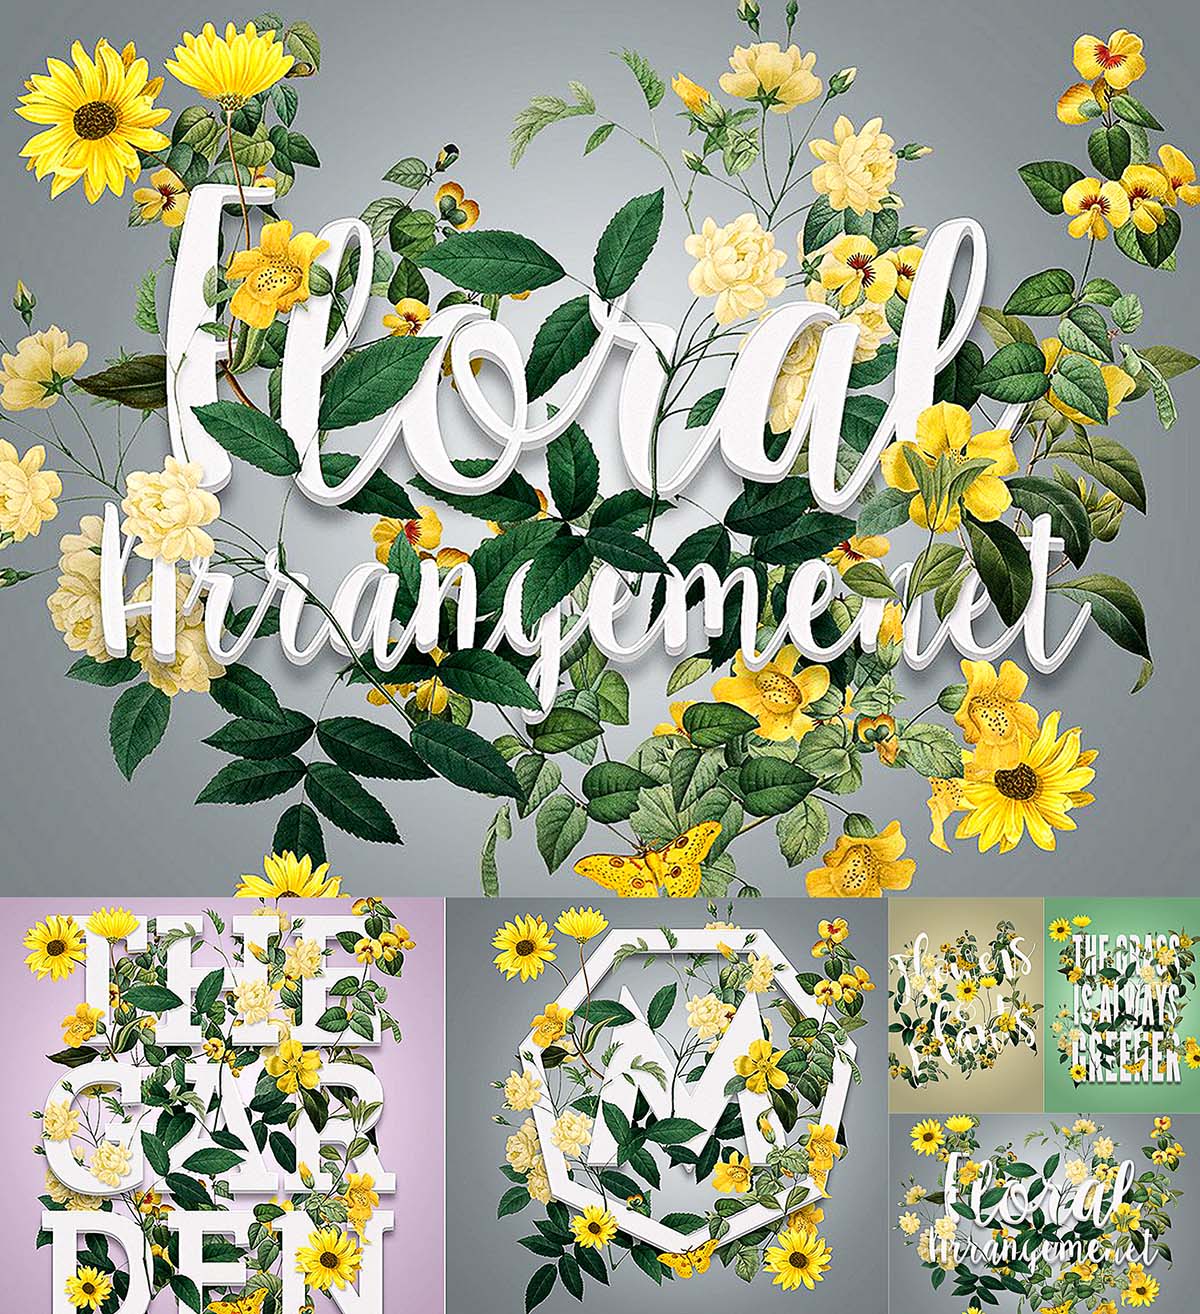 Floral arrangement mockup set